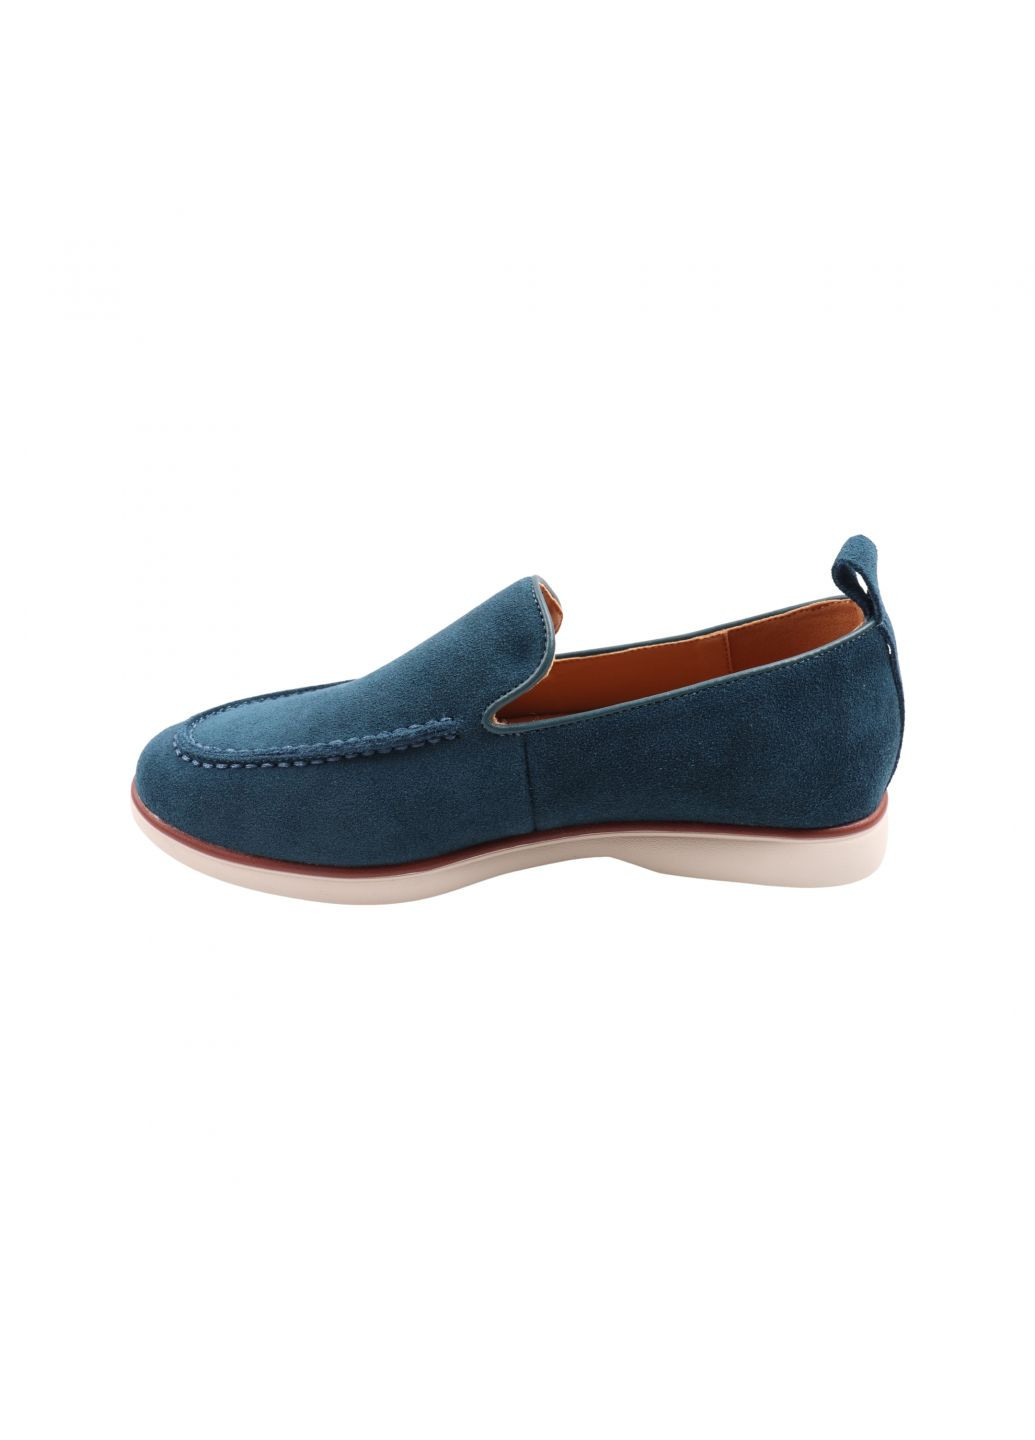 Туфлі жіночі сині натуральна замша Gifanni 188-23dtc (257454555)